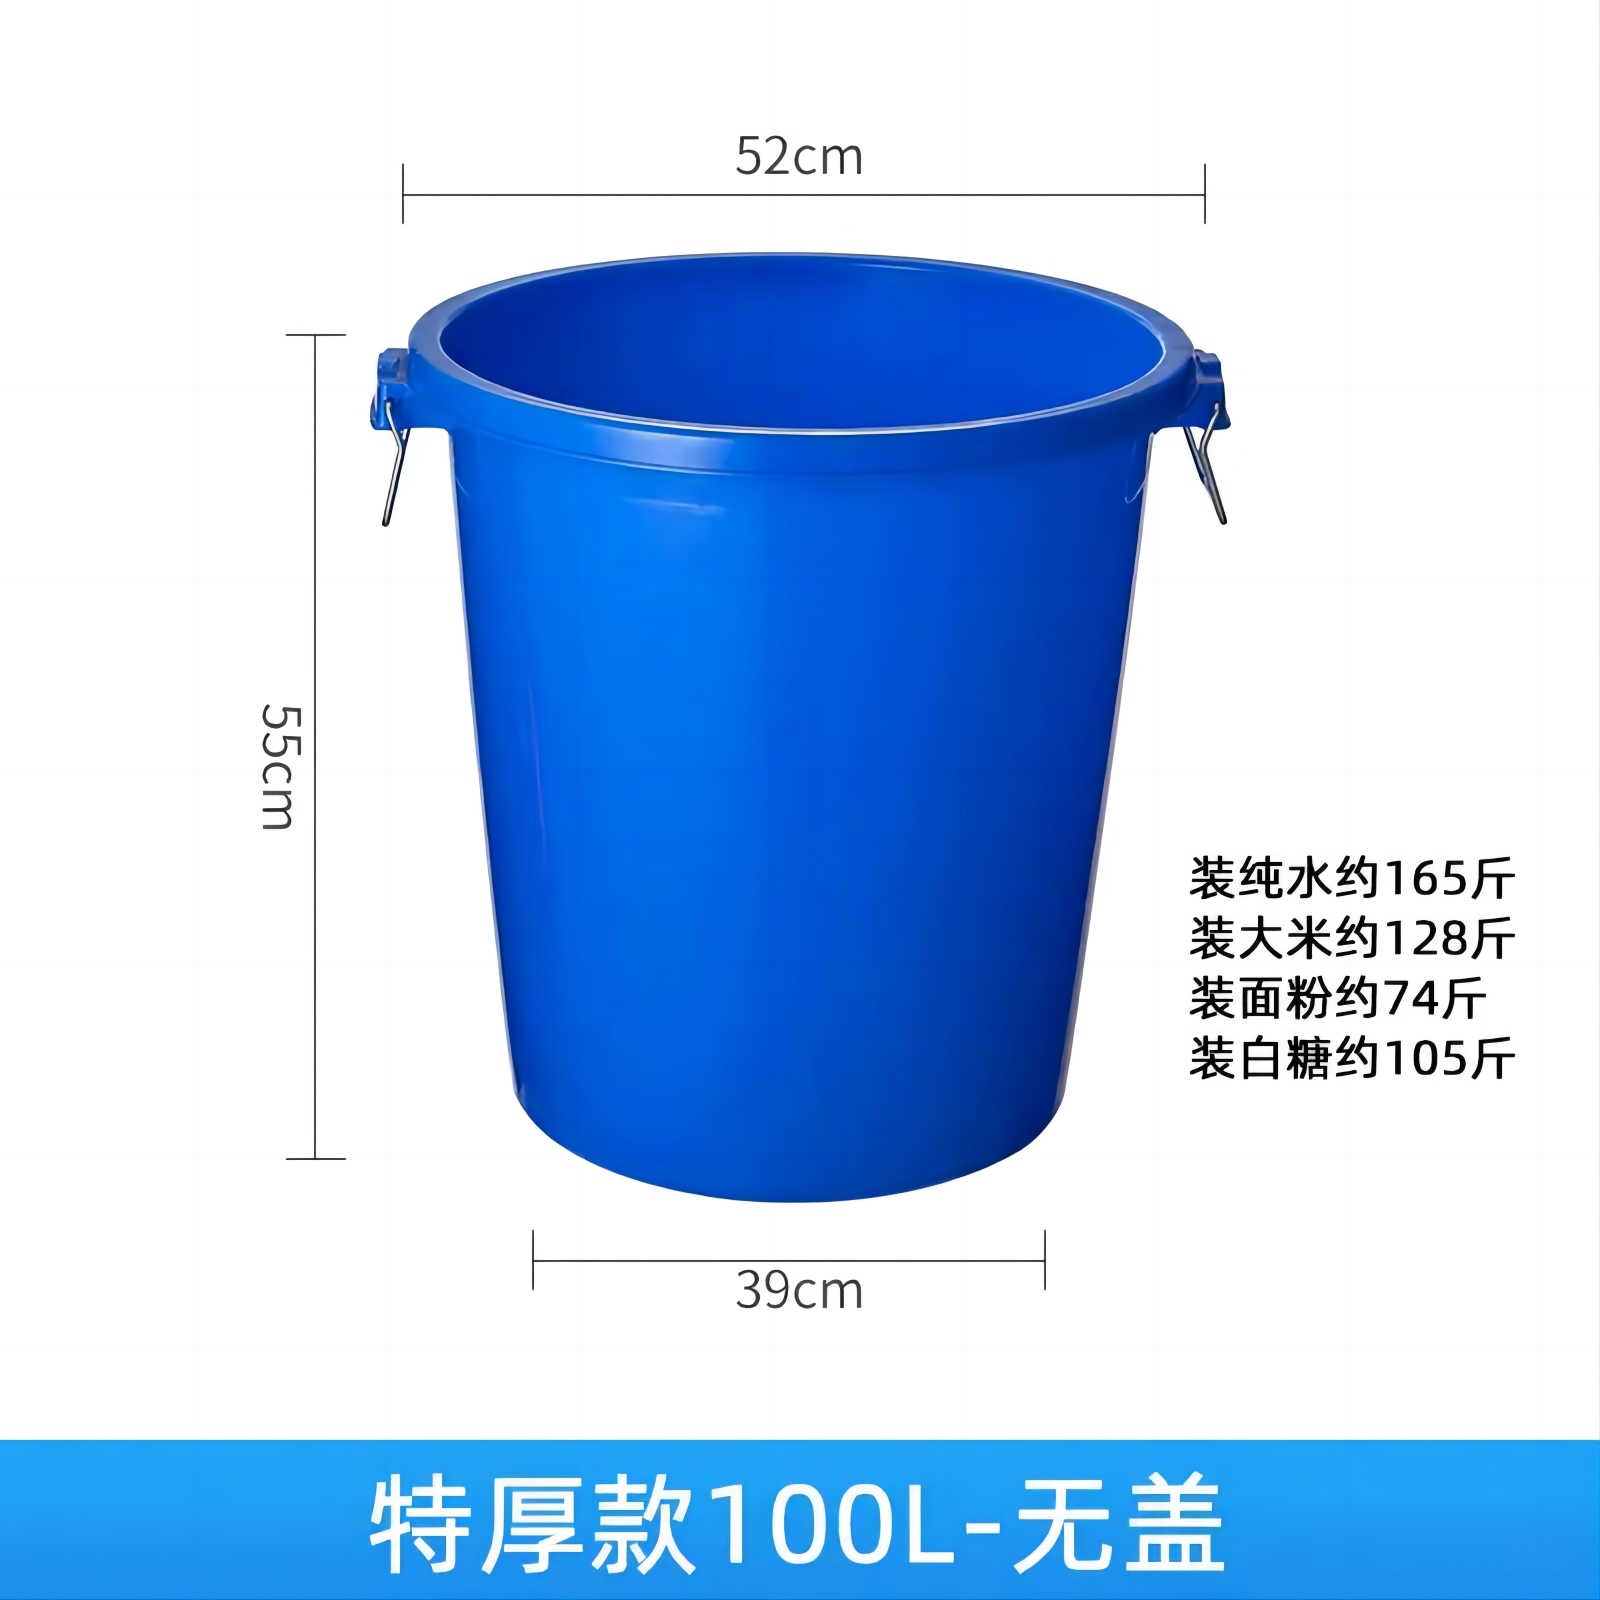 晨光大号圆形蓝色无盖垃圾桶100L 直径52cm  高55cm